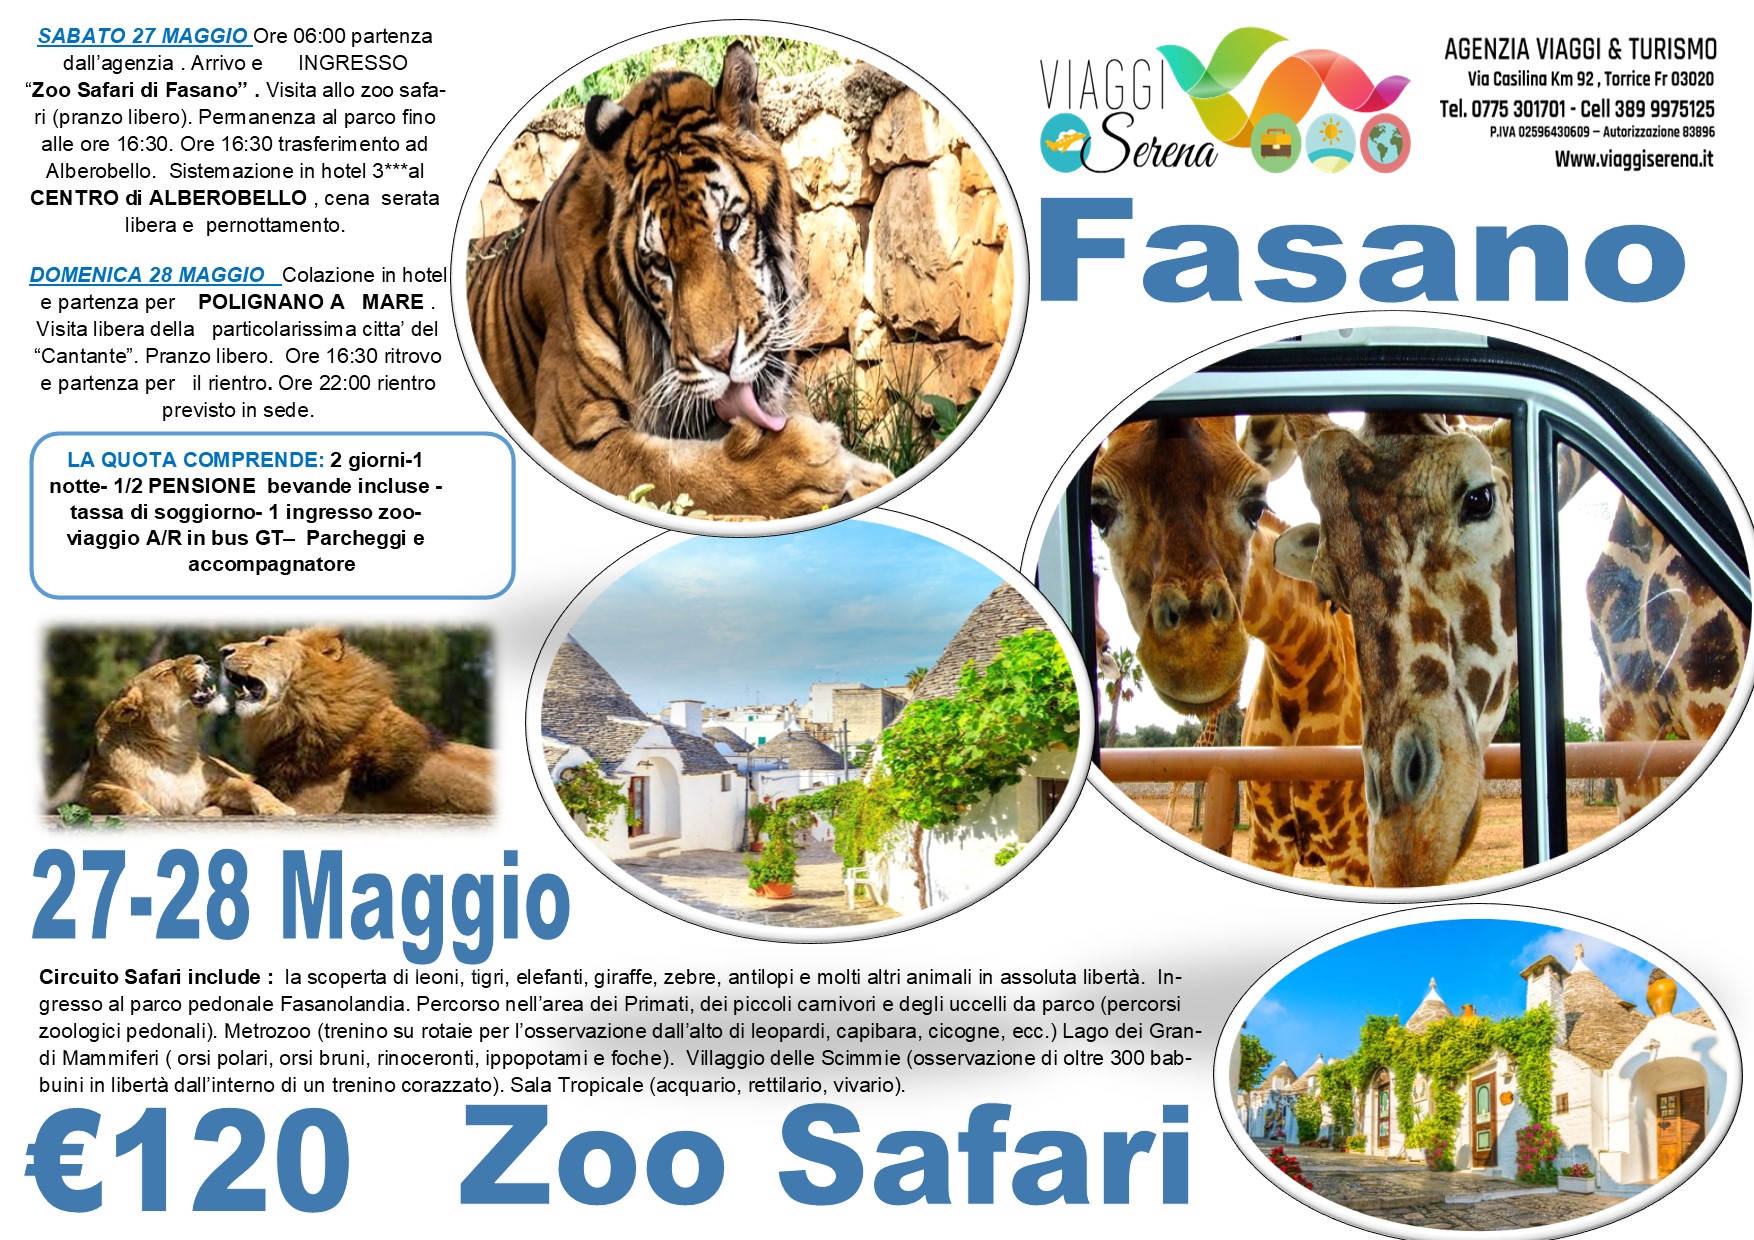 Viaggi di Gruppo: ZOO SAFARI , Alberobello & Polignano a Mare 27-28 Maggio € 120,00